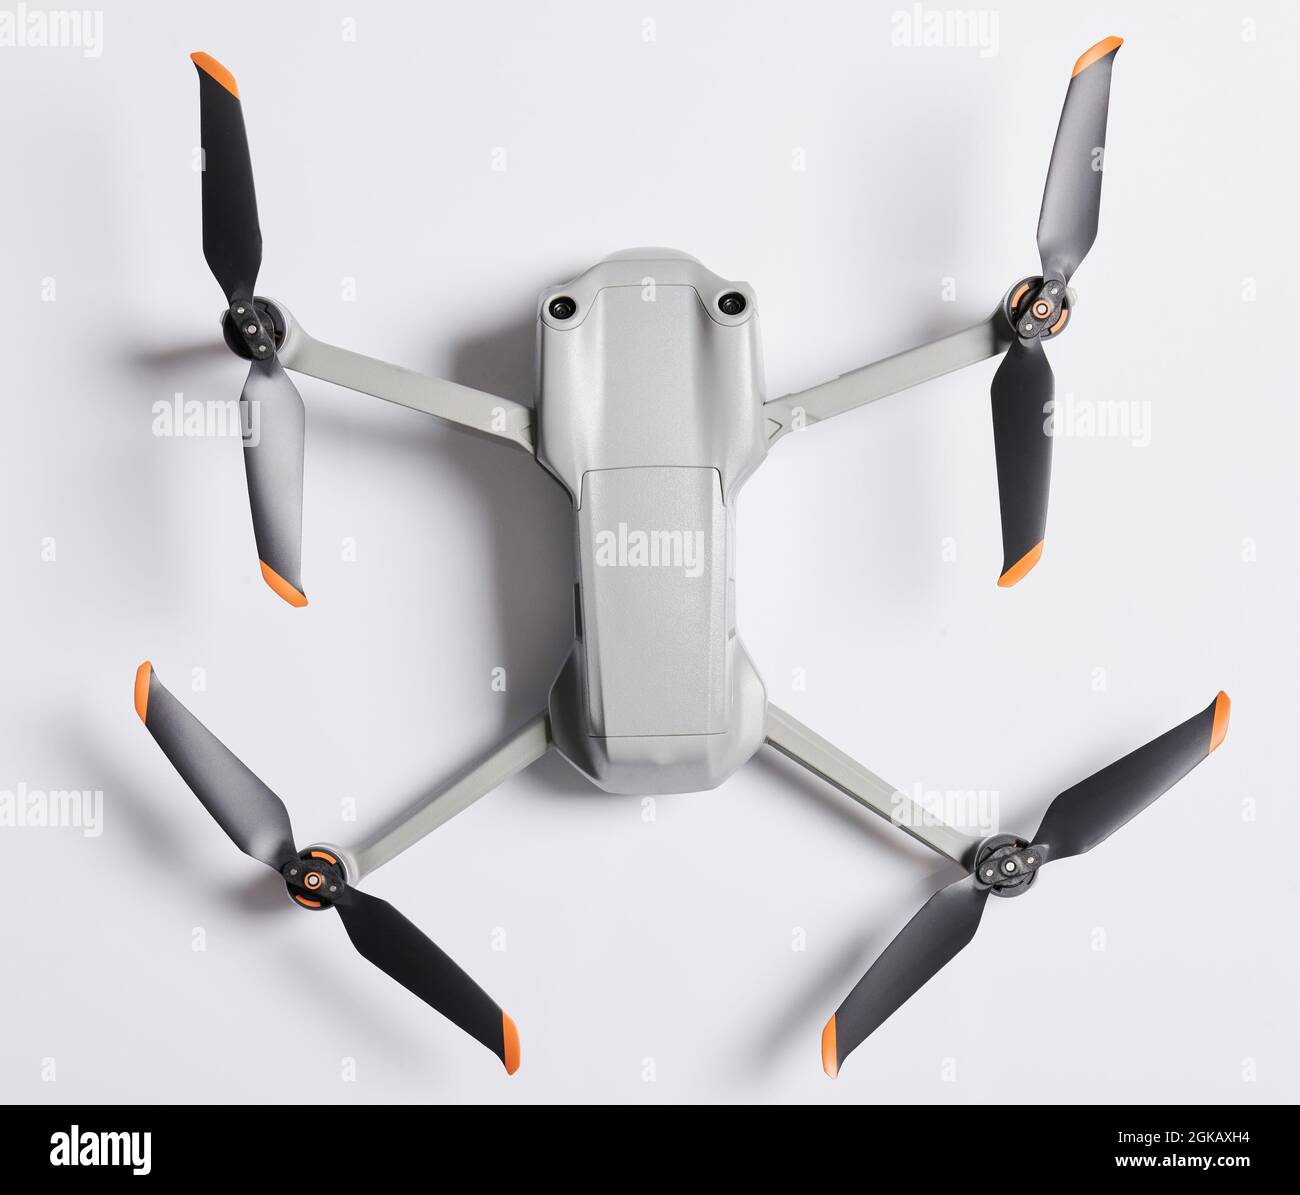 Moderne faltbare Drohne über Draufsicht isoliert auf Studio-Hintergrund Stockfoto